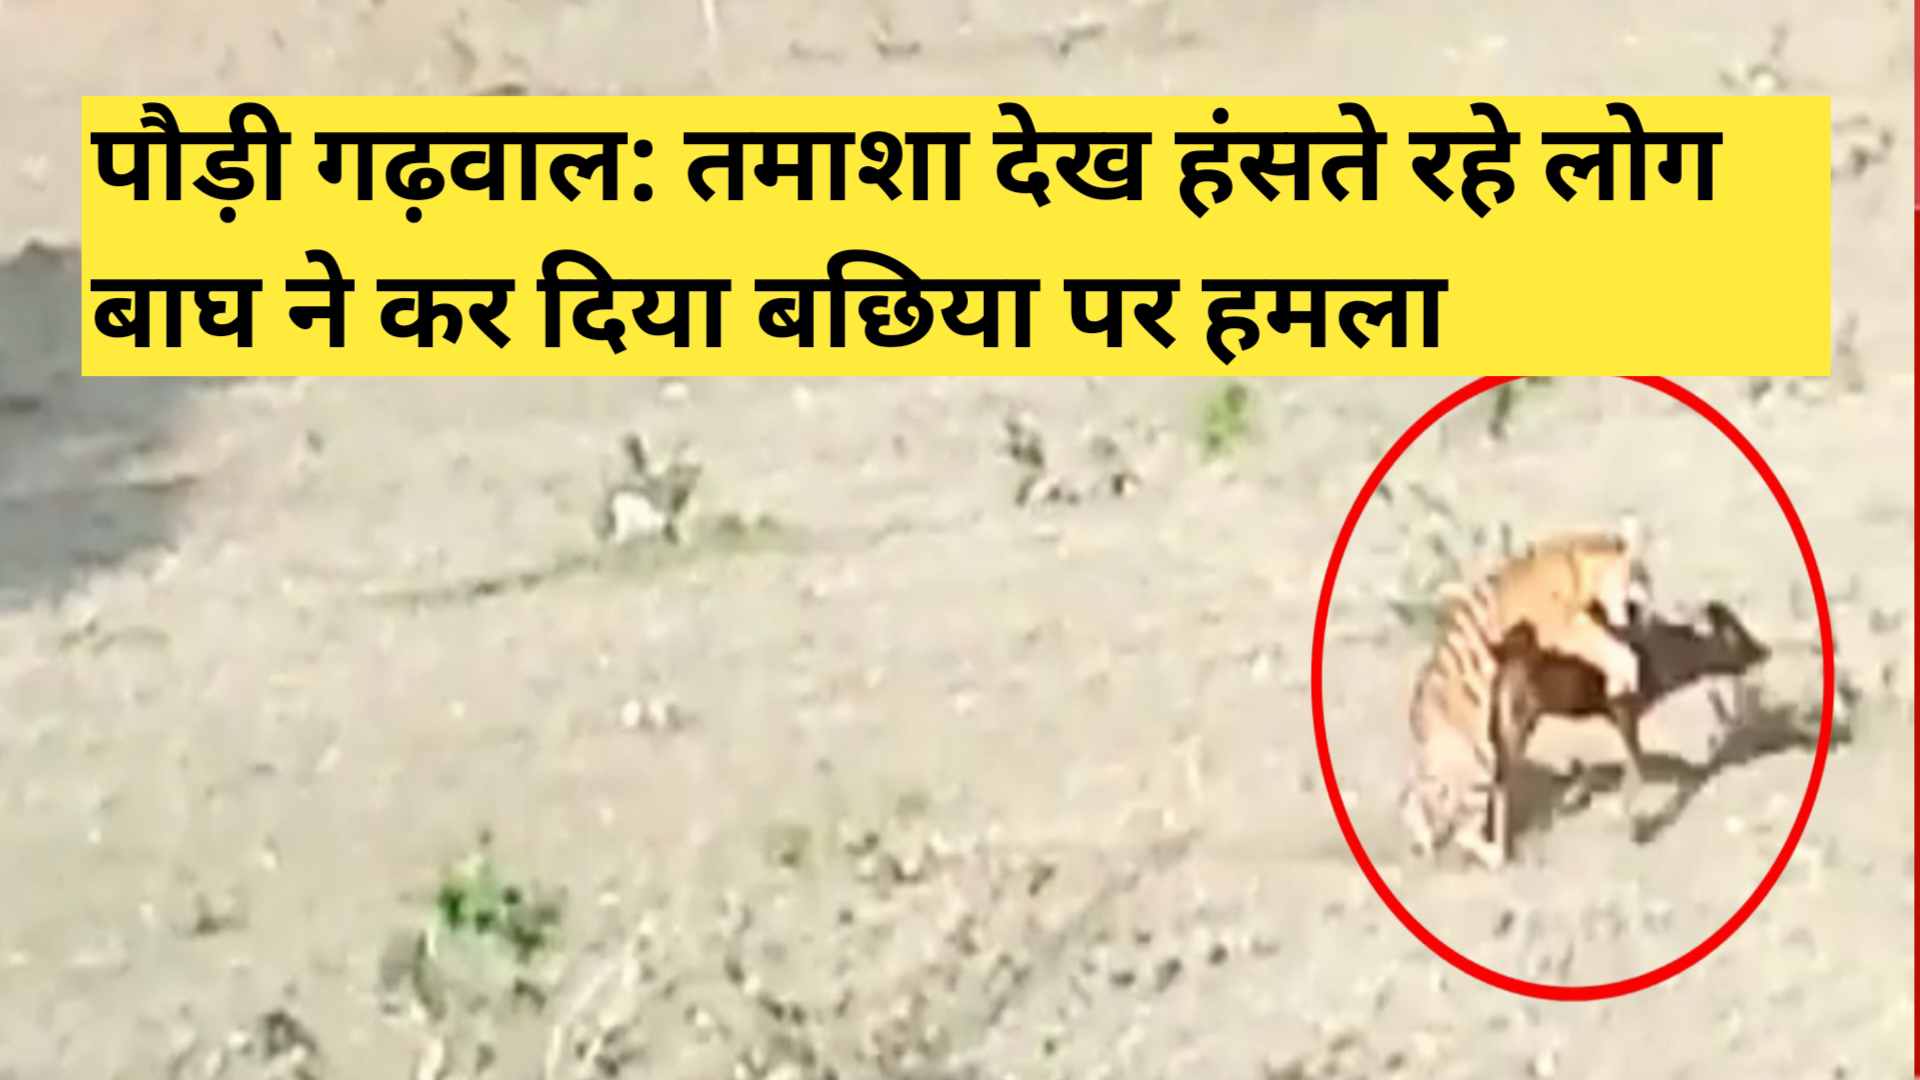 PAURI GARHWAL tiger attack